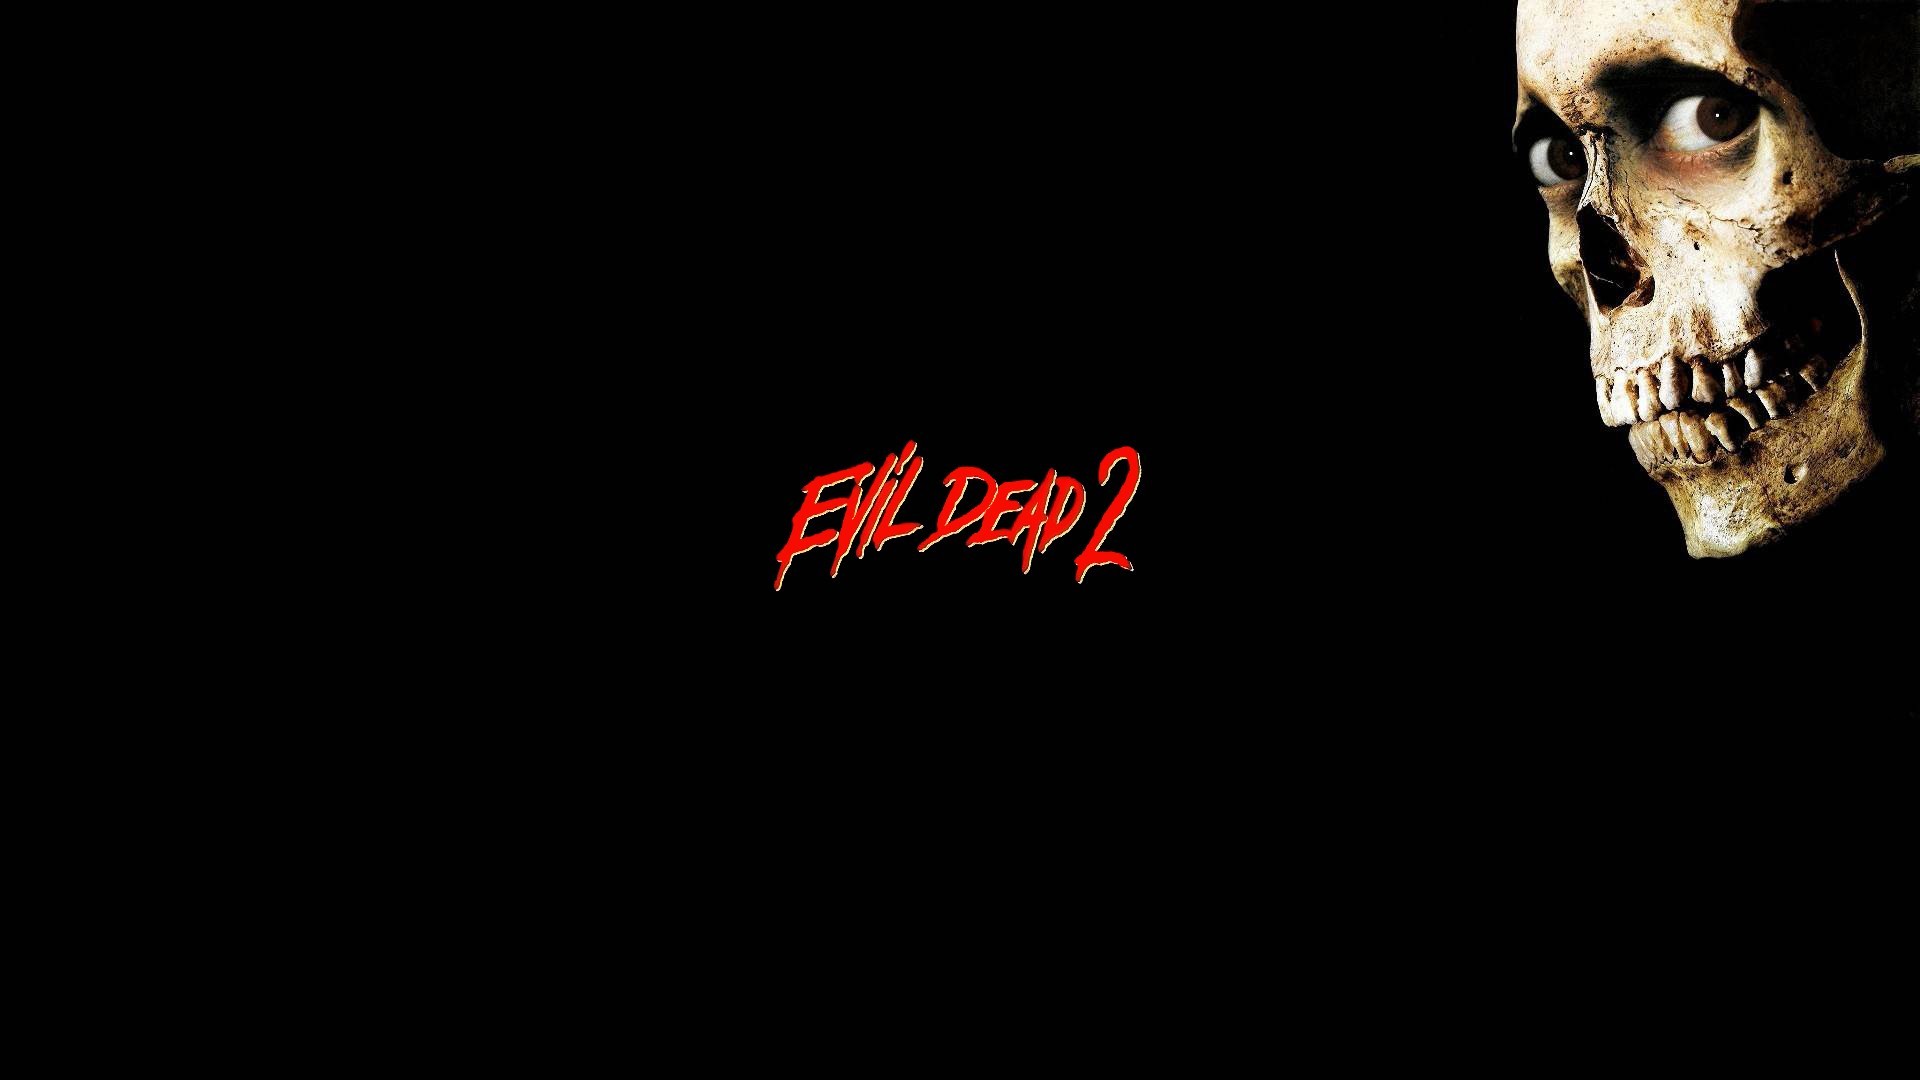 Hd wallpaper evil dead ii – evil dead ii category